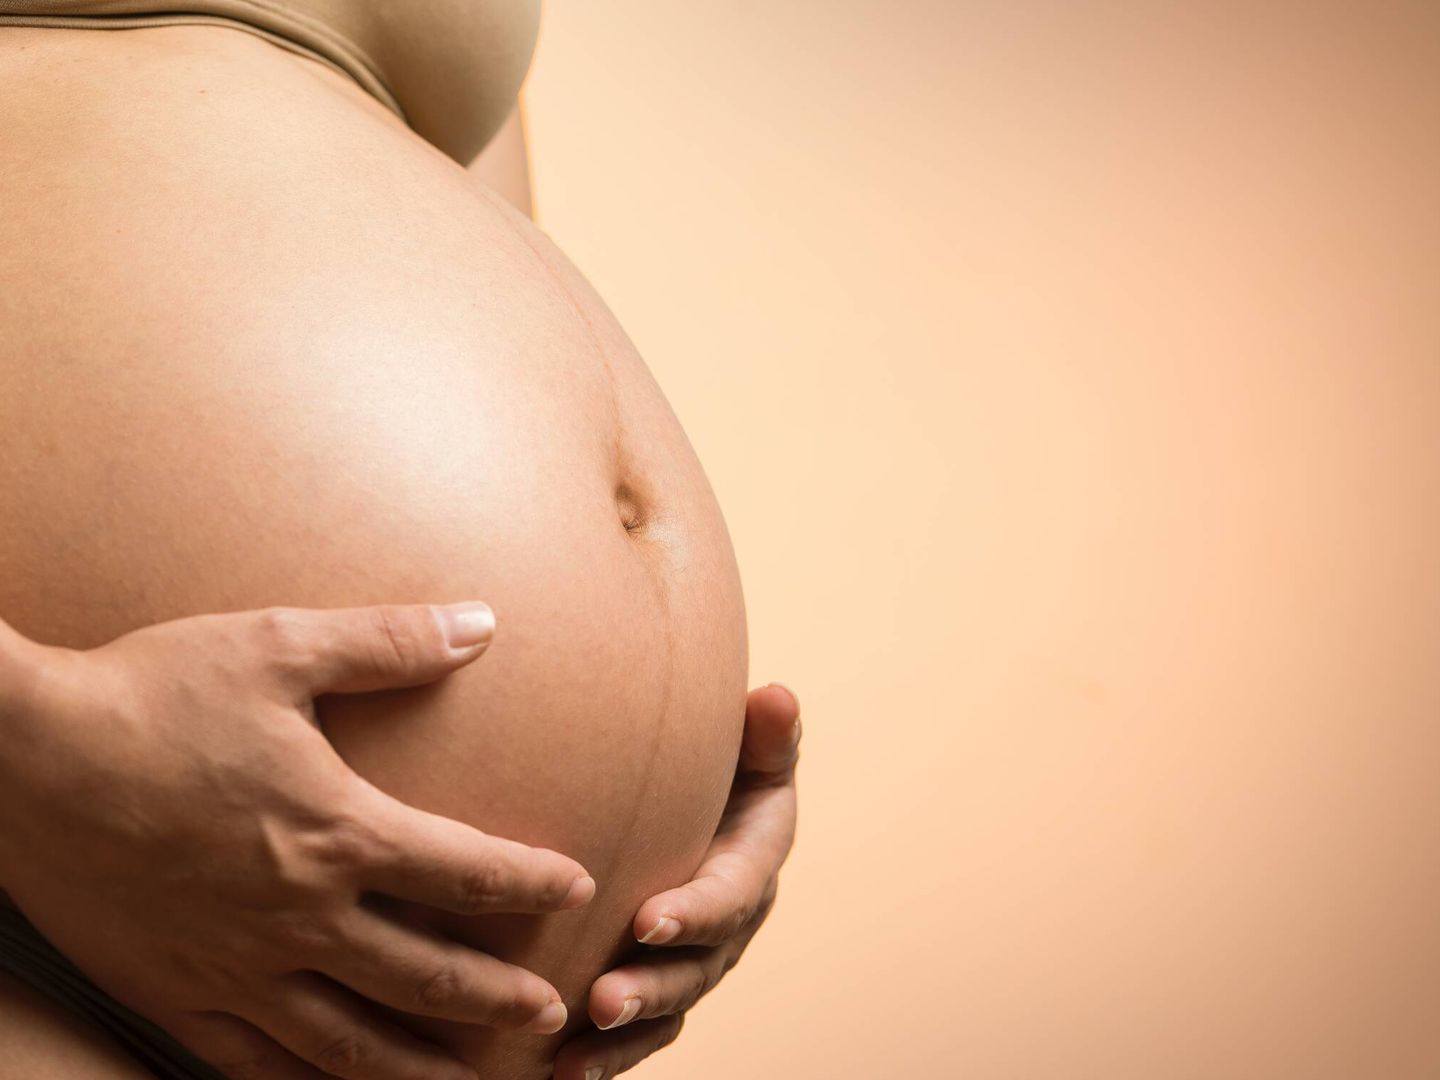 La obesidad materna puede incidir en el desarrollo del feto. (Pexels)